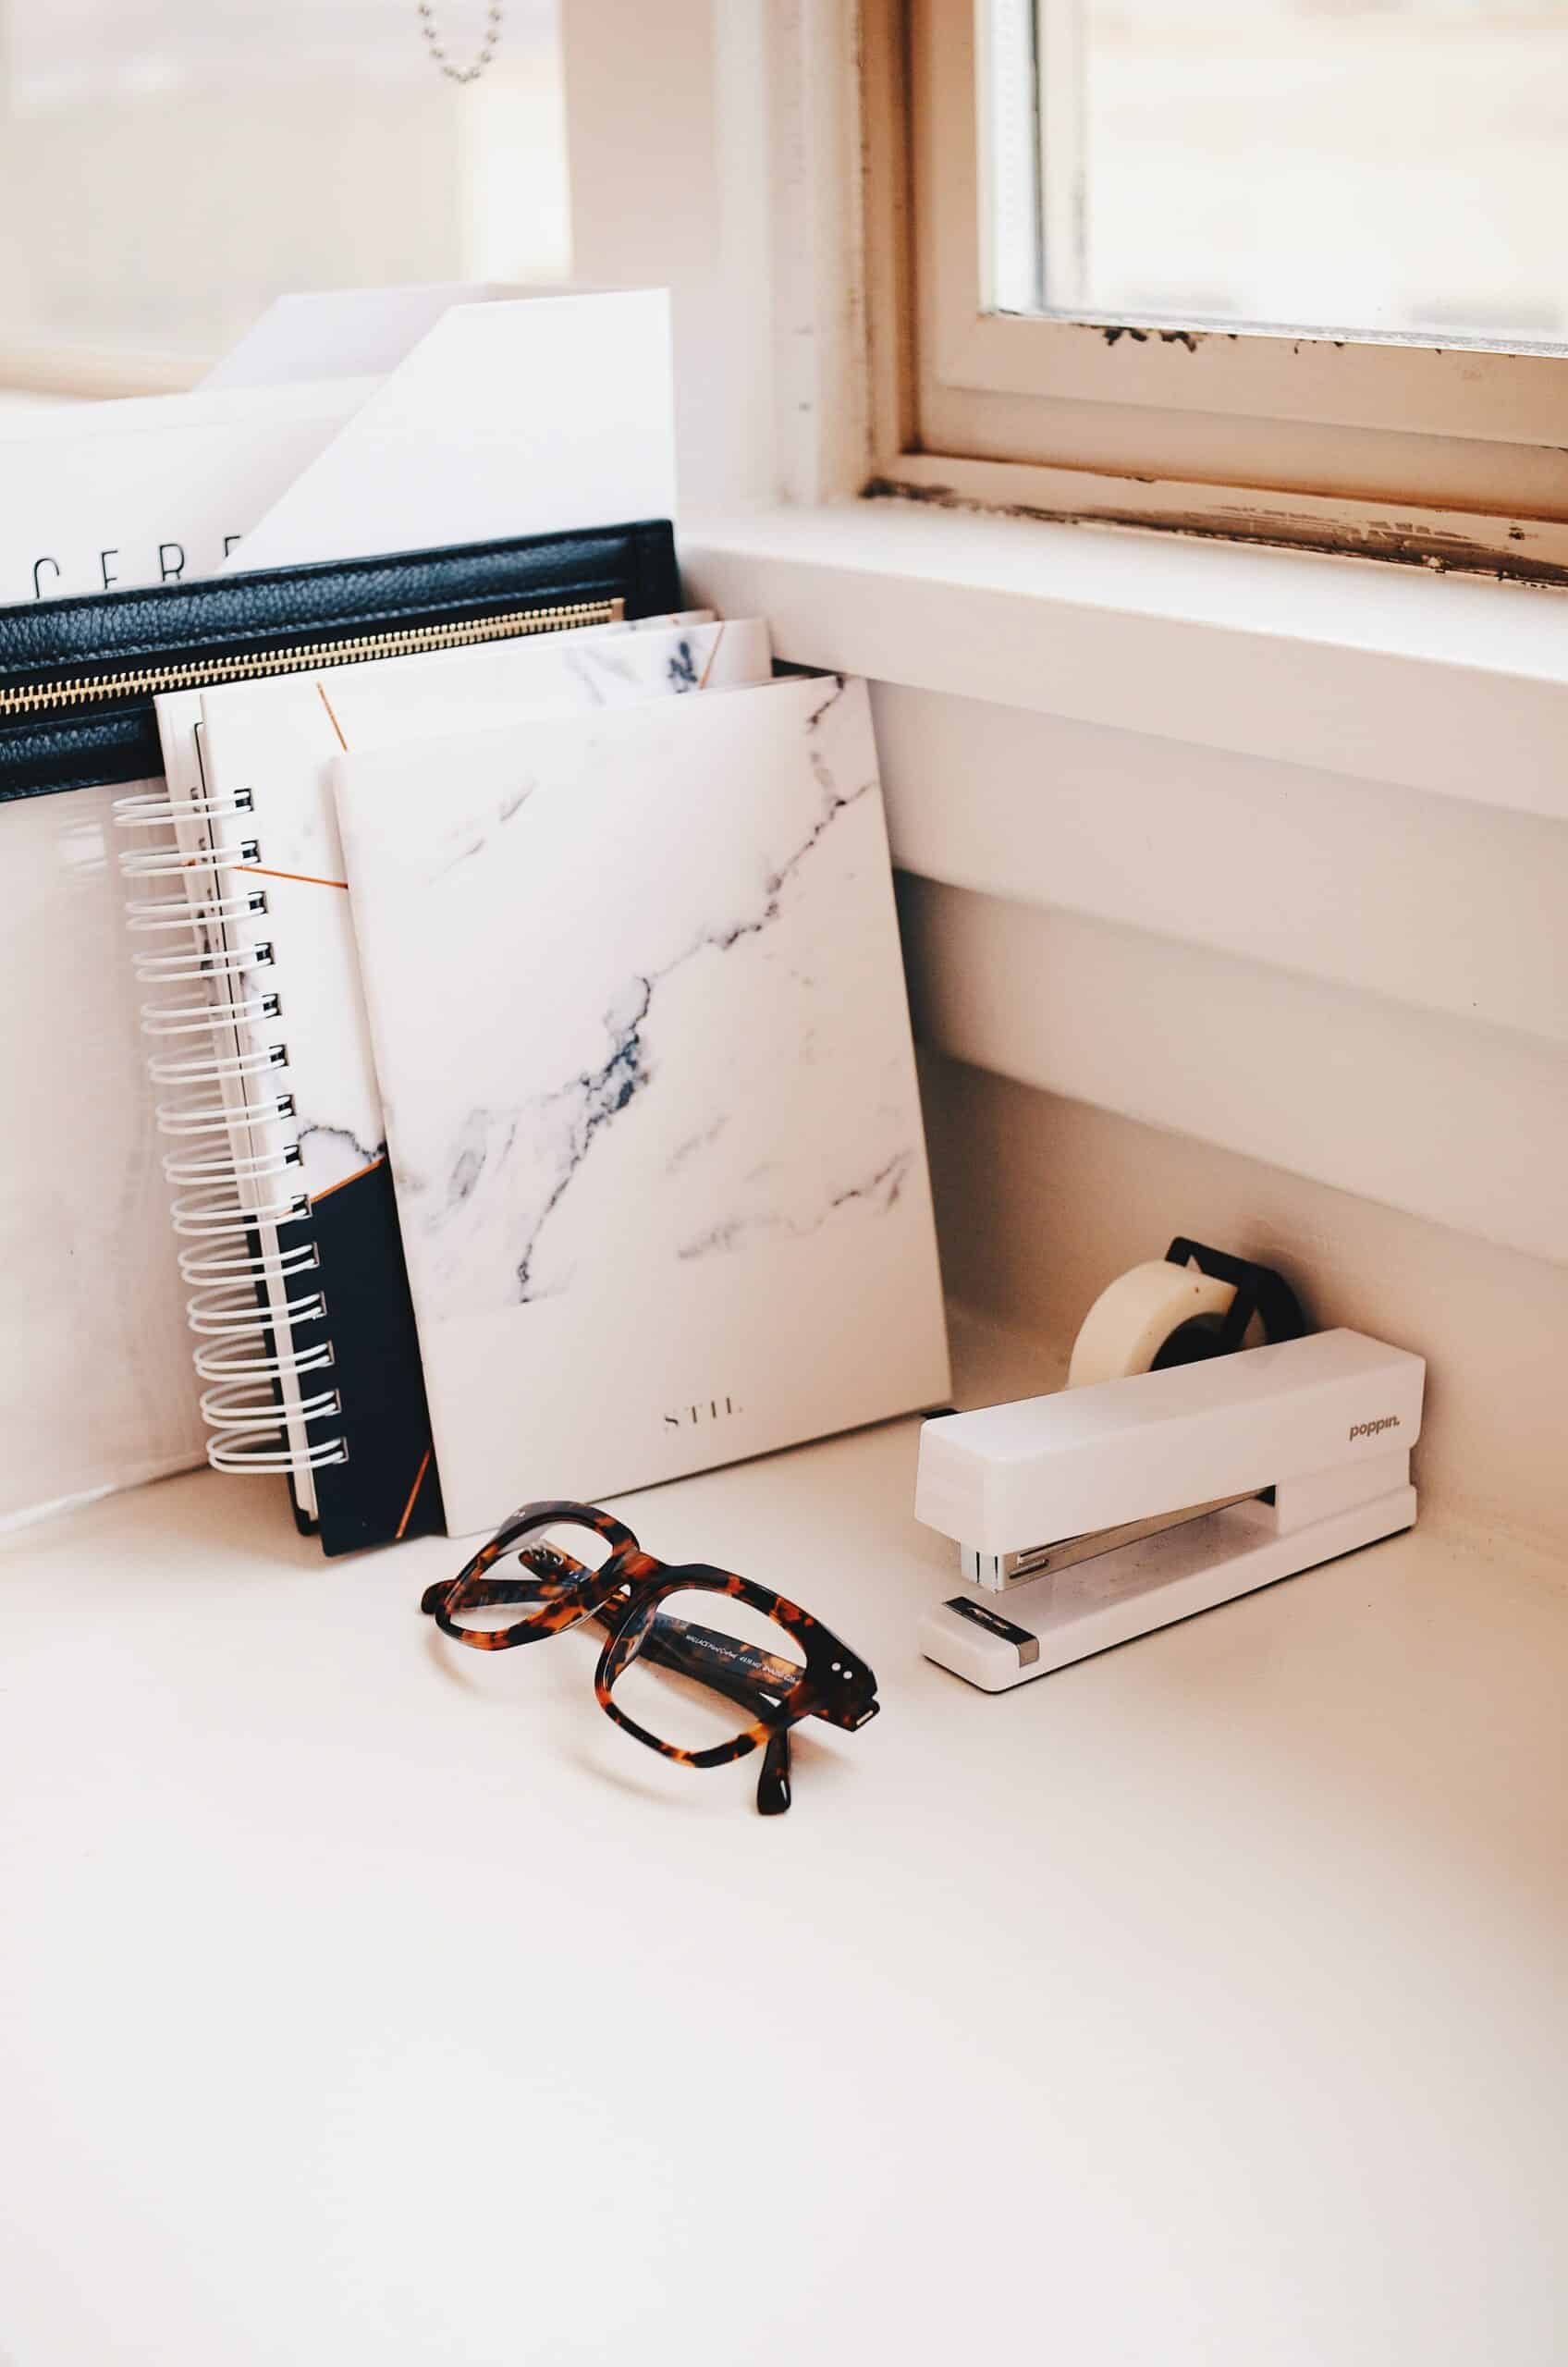 Eyeglasses, notebooks, tape and stapler on a desk.